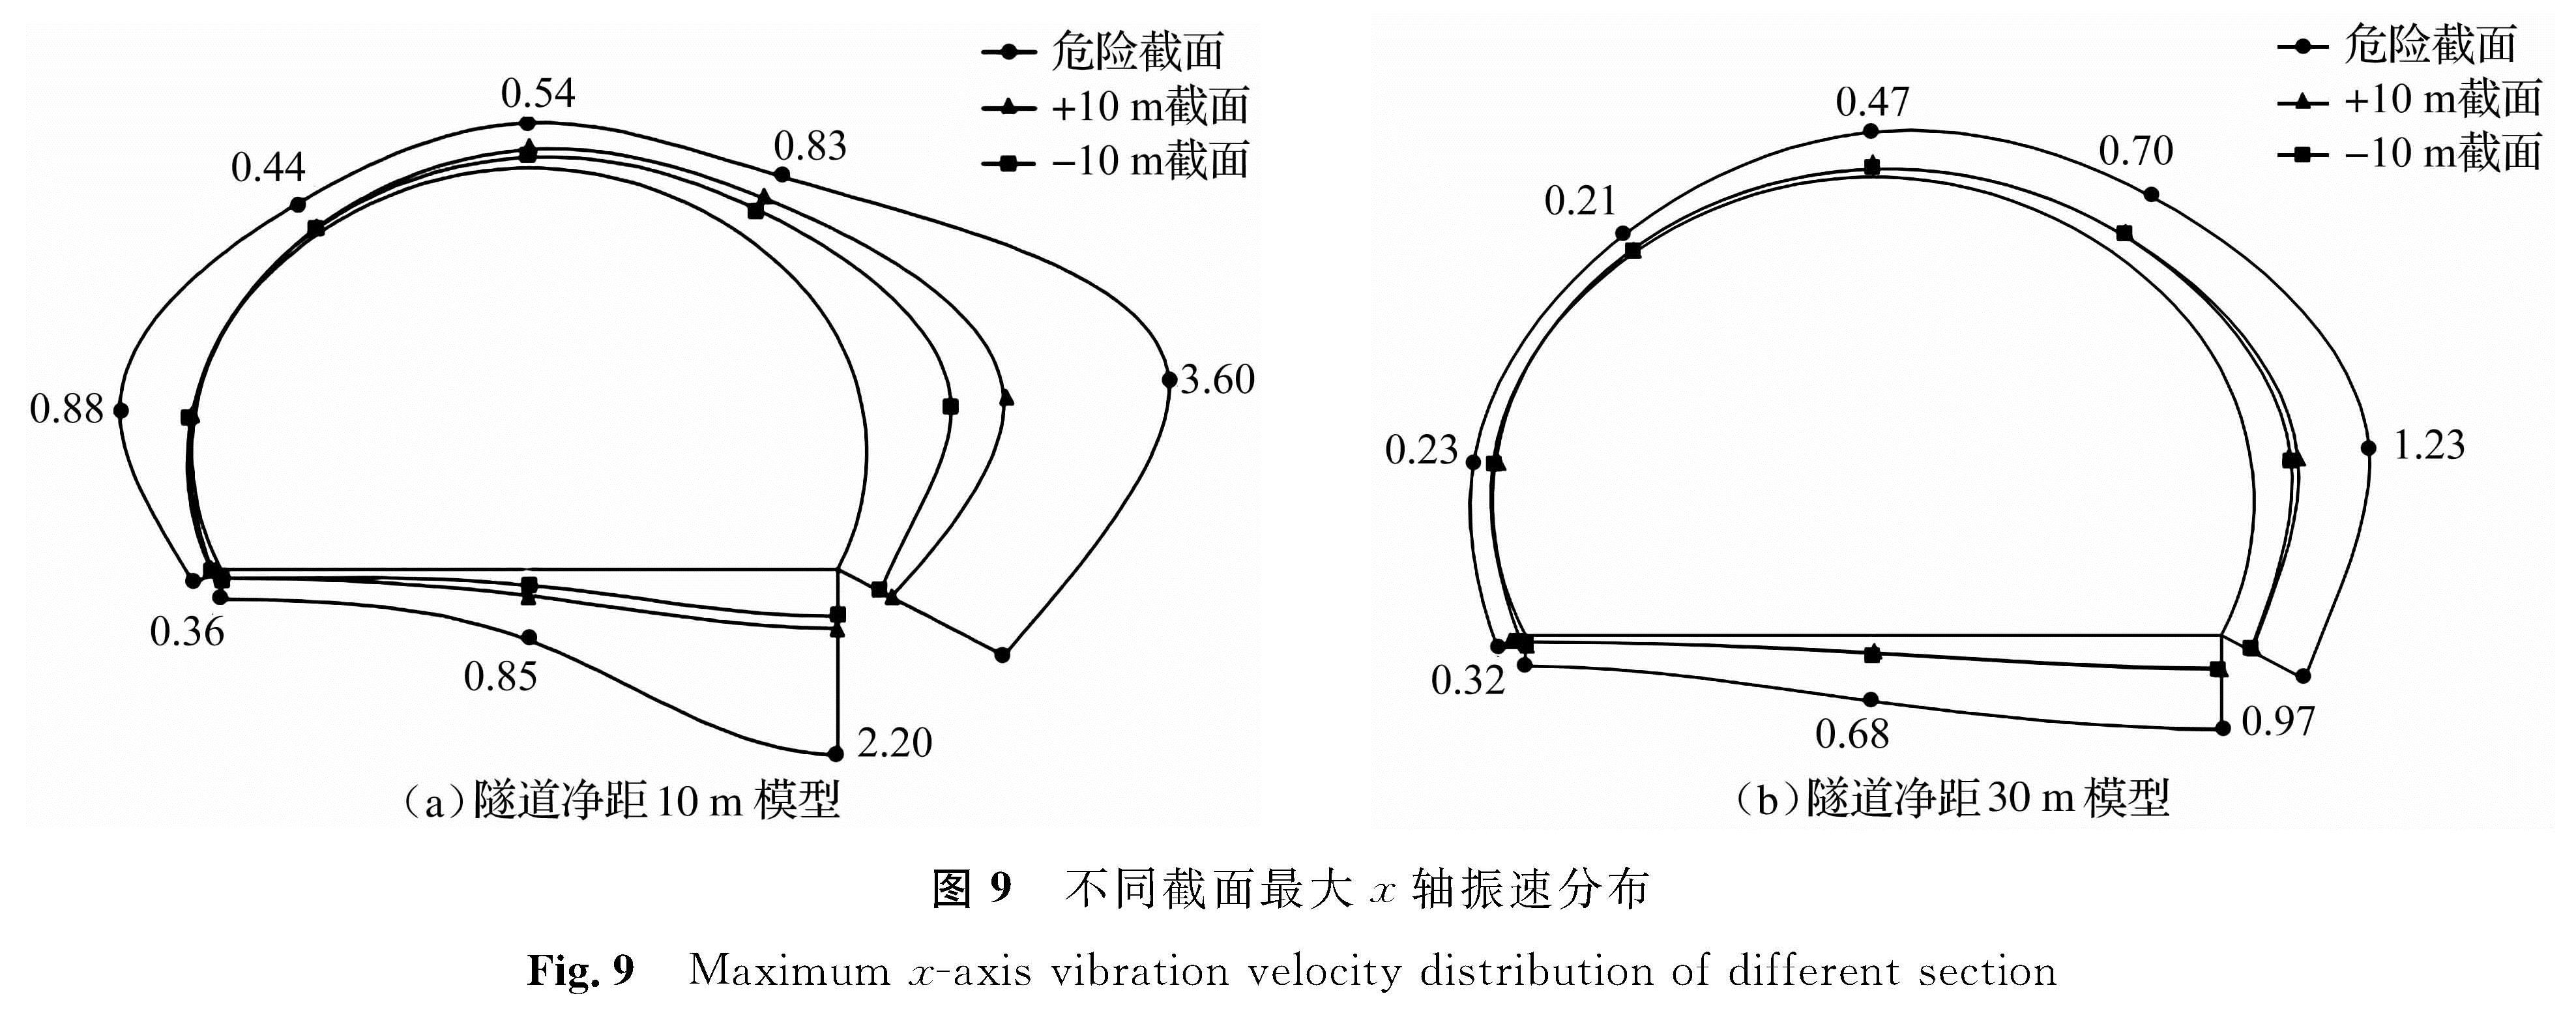 图9 不同截面最大x轴振速分布<br/>Fig.9 Maximum x-axis vibration velocity distribution of different section